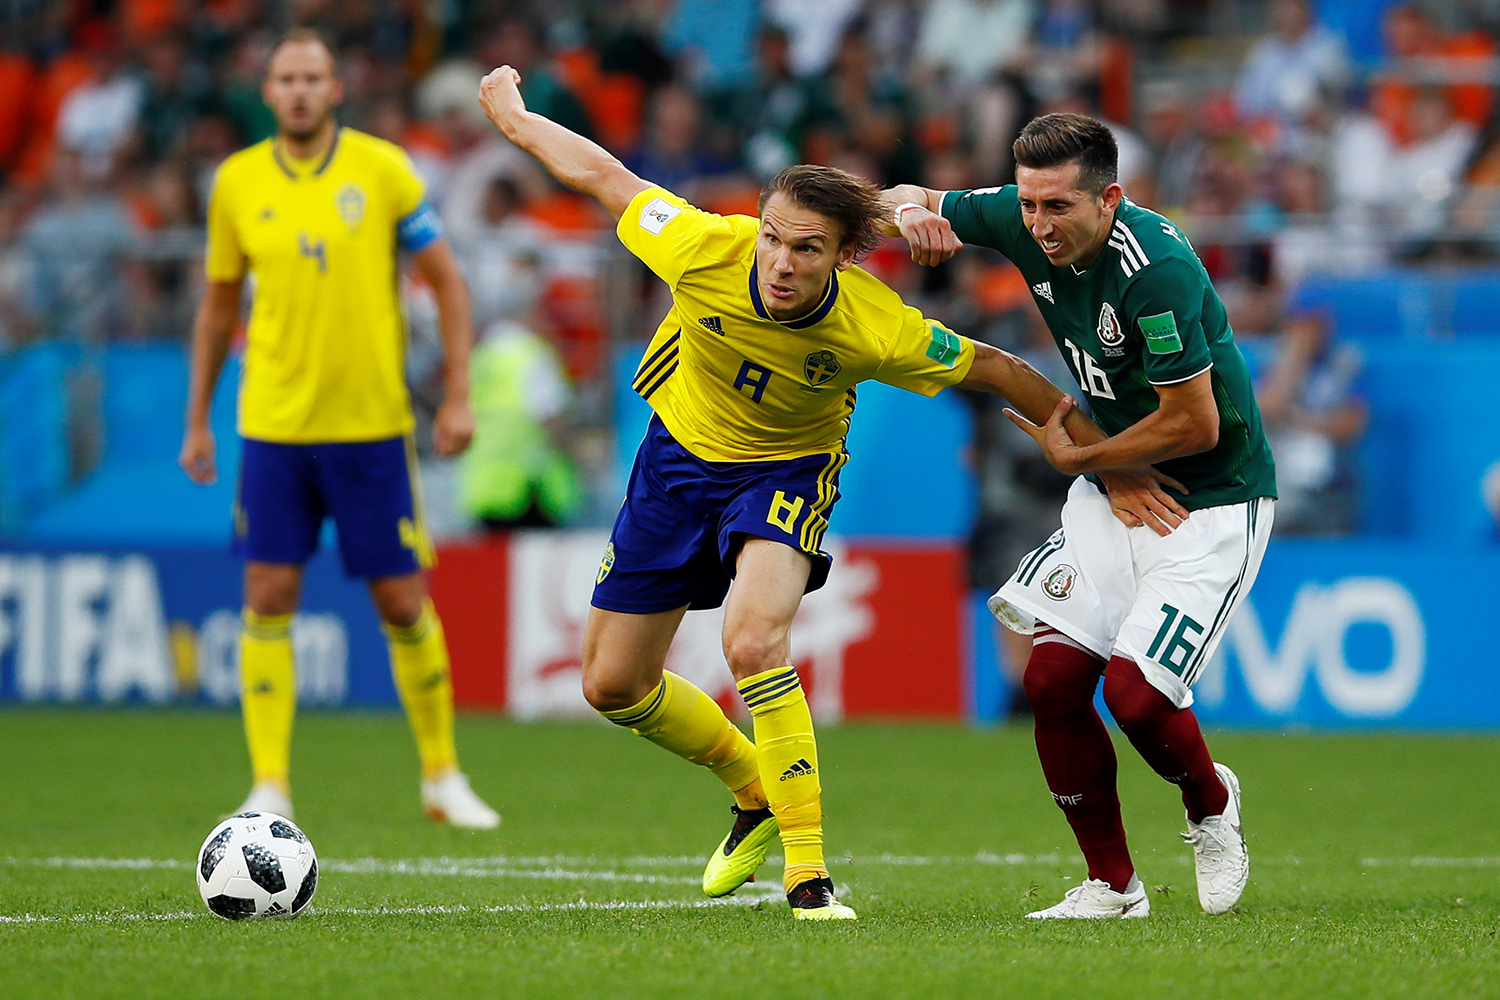 Suécia ou México? Últimos jogos definem próximo adversário do Brasil